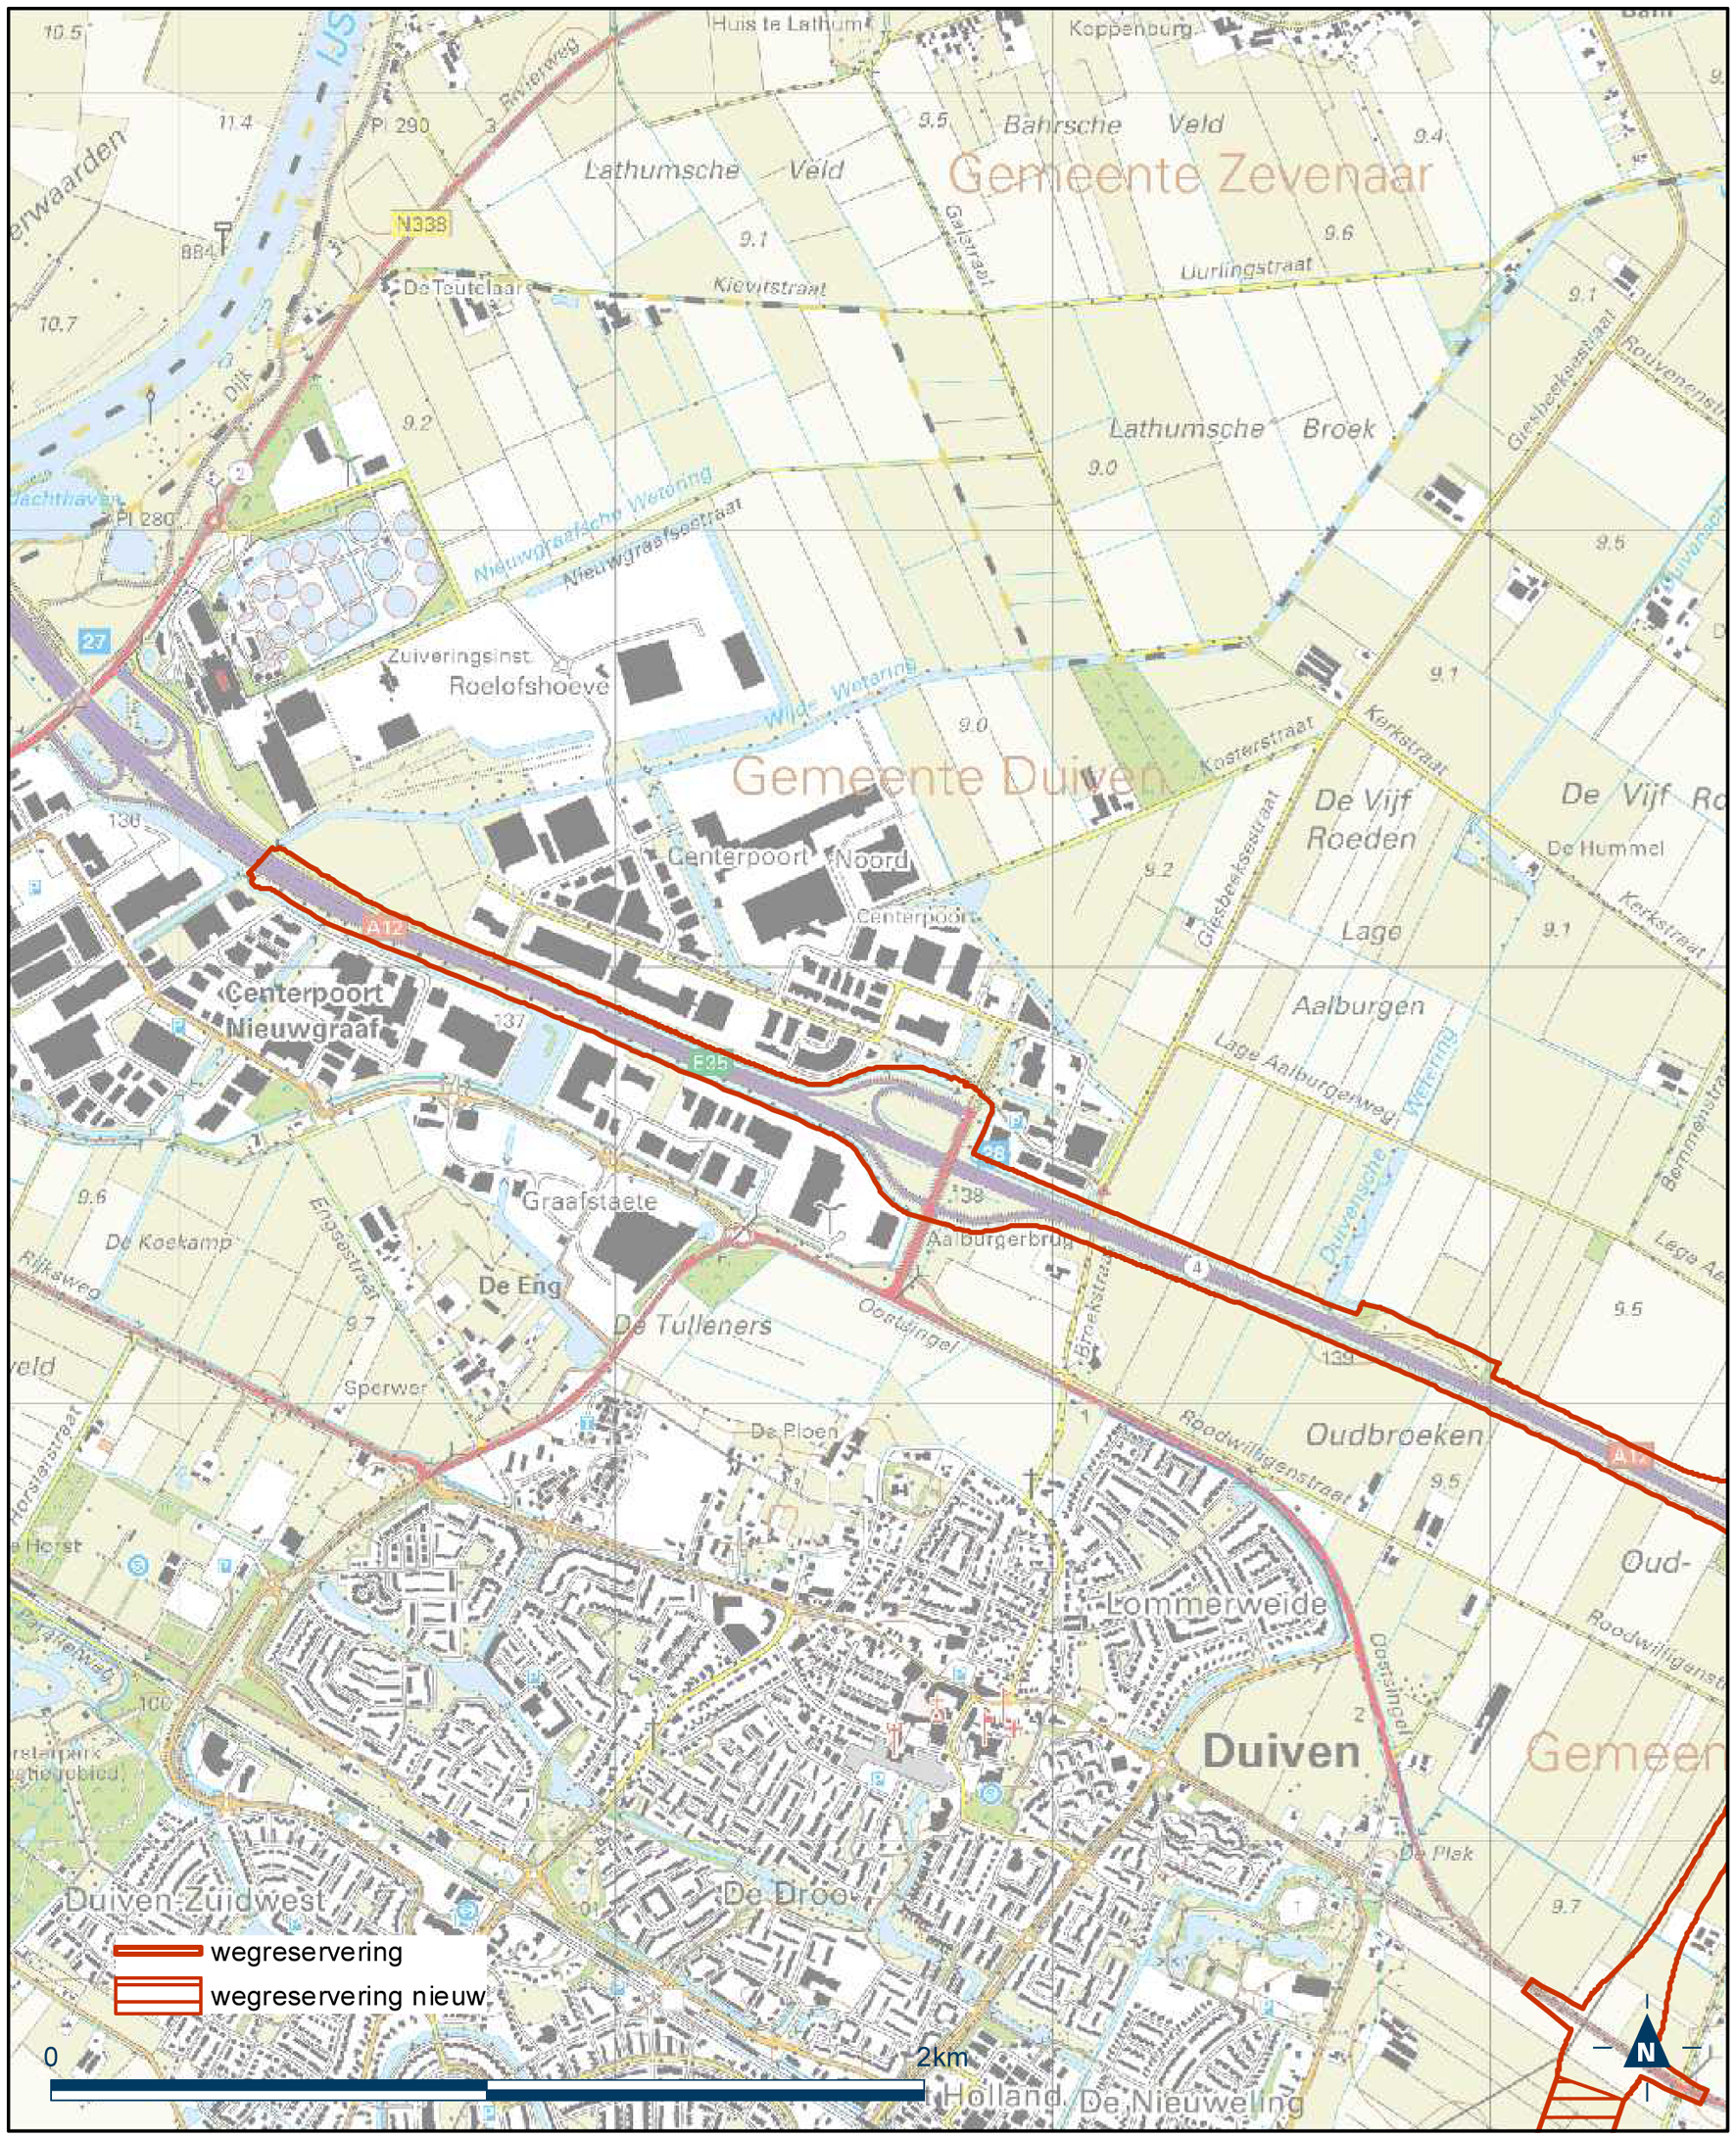 Detailkaart 11 reserveringsgebied nieuwe hoofdweg A12/A15 bereikbaarheid regio Arnhem-Nijmegen